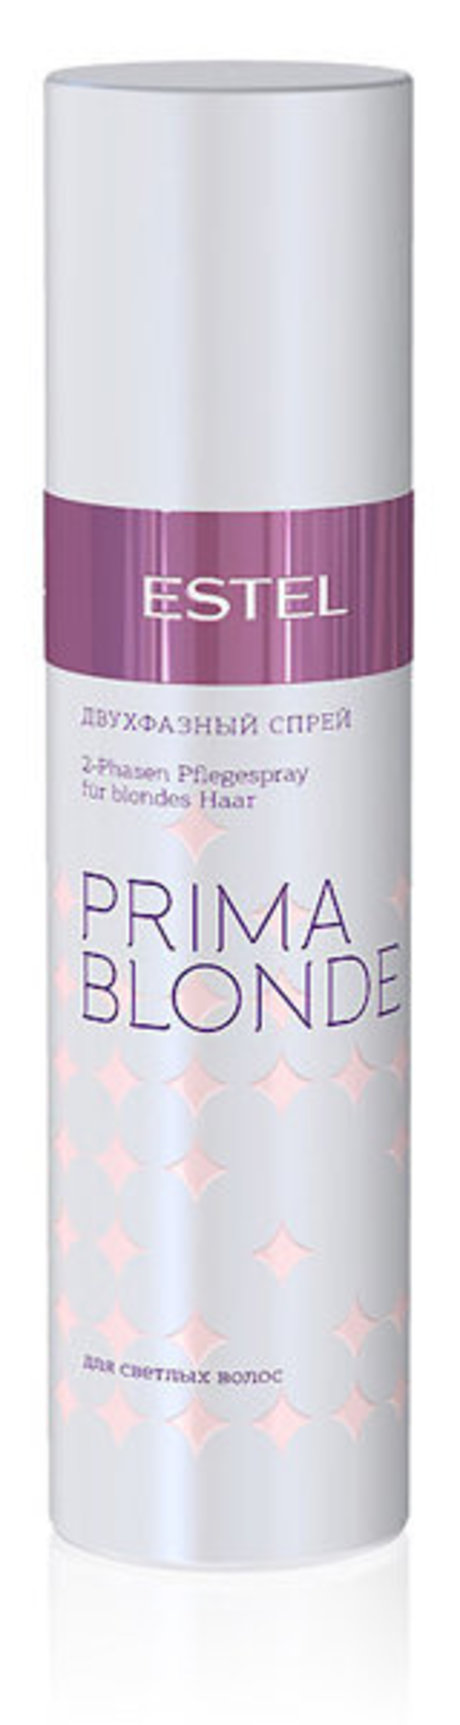 estel prima blonde двухфазный спрей для светлых волос